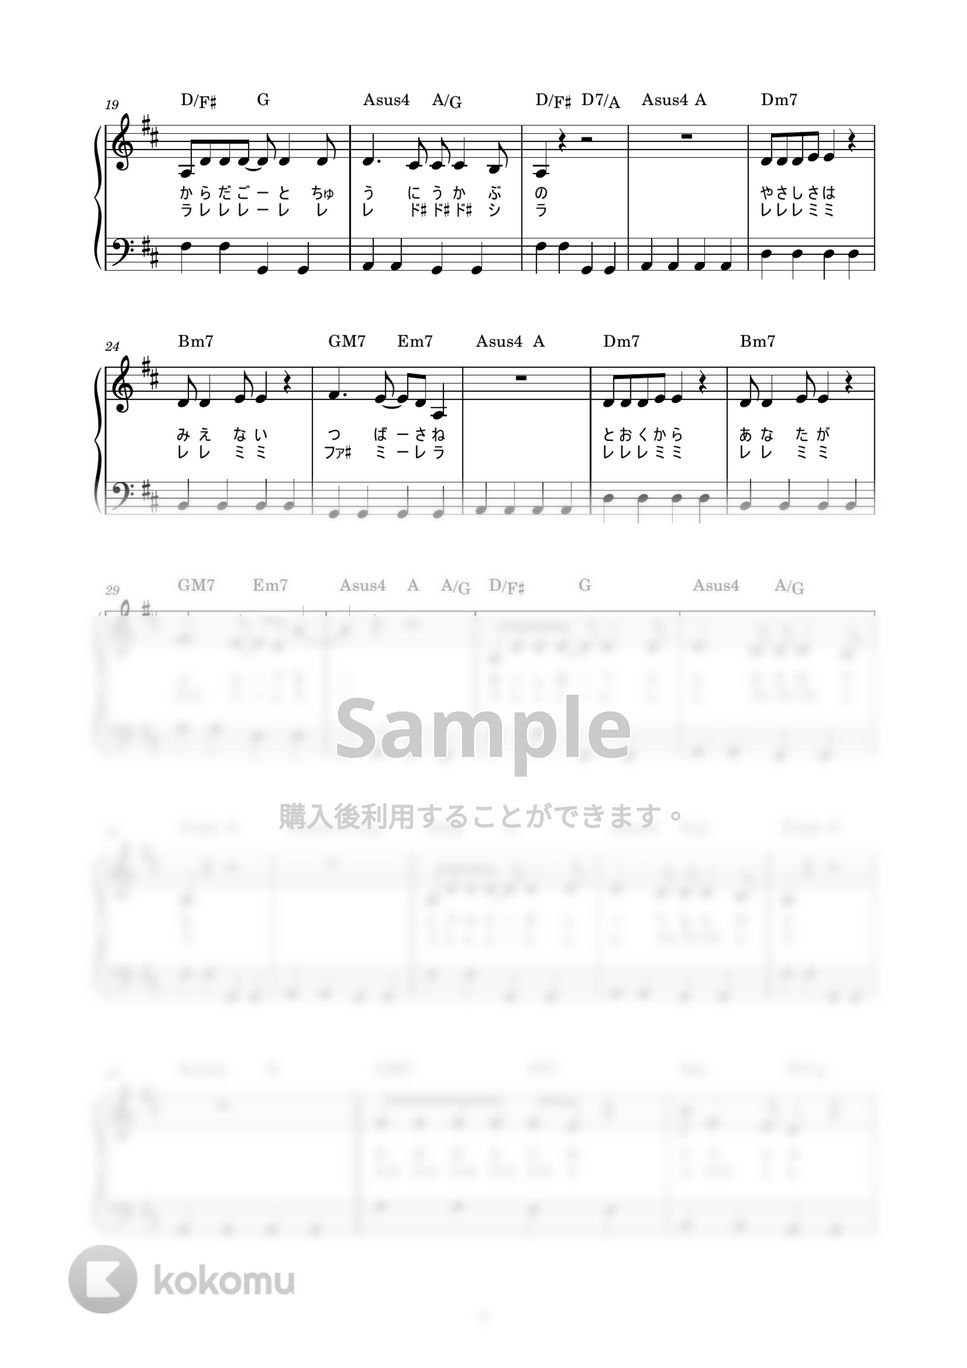 安田成美 - 風の谷のナウシカ (かんたん / 歌詞付き / ドレミ付き / 初心者) by piano.tokyo